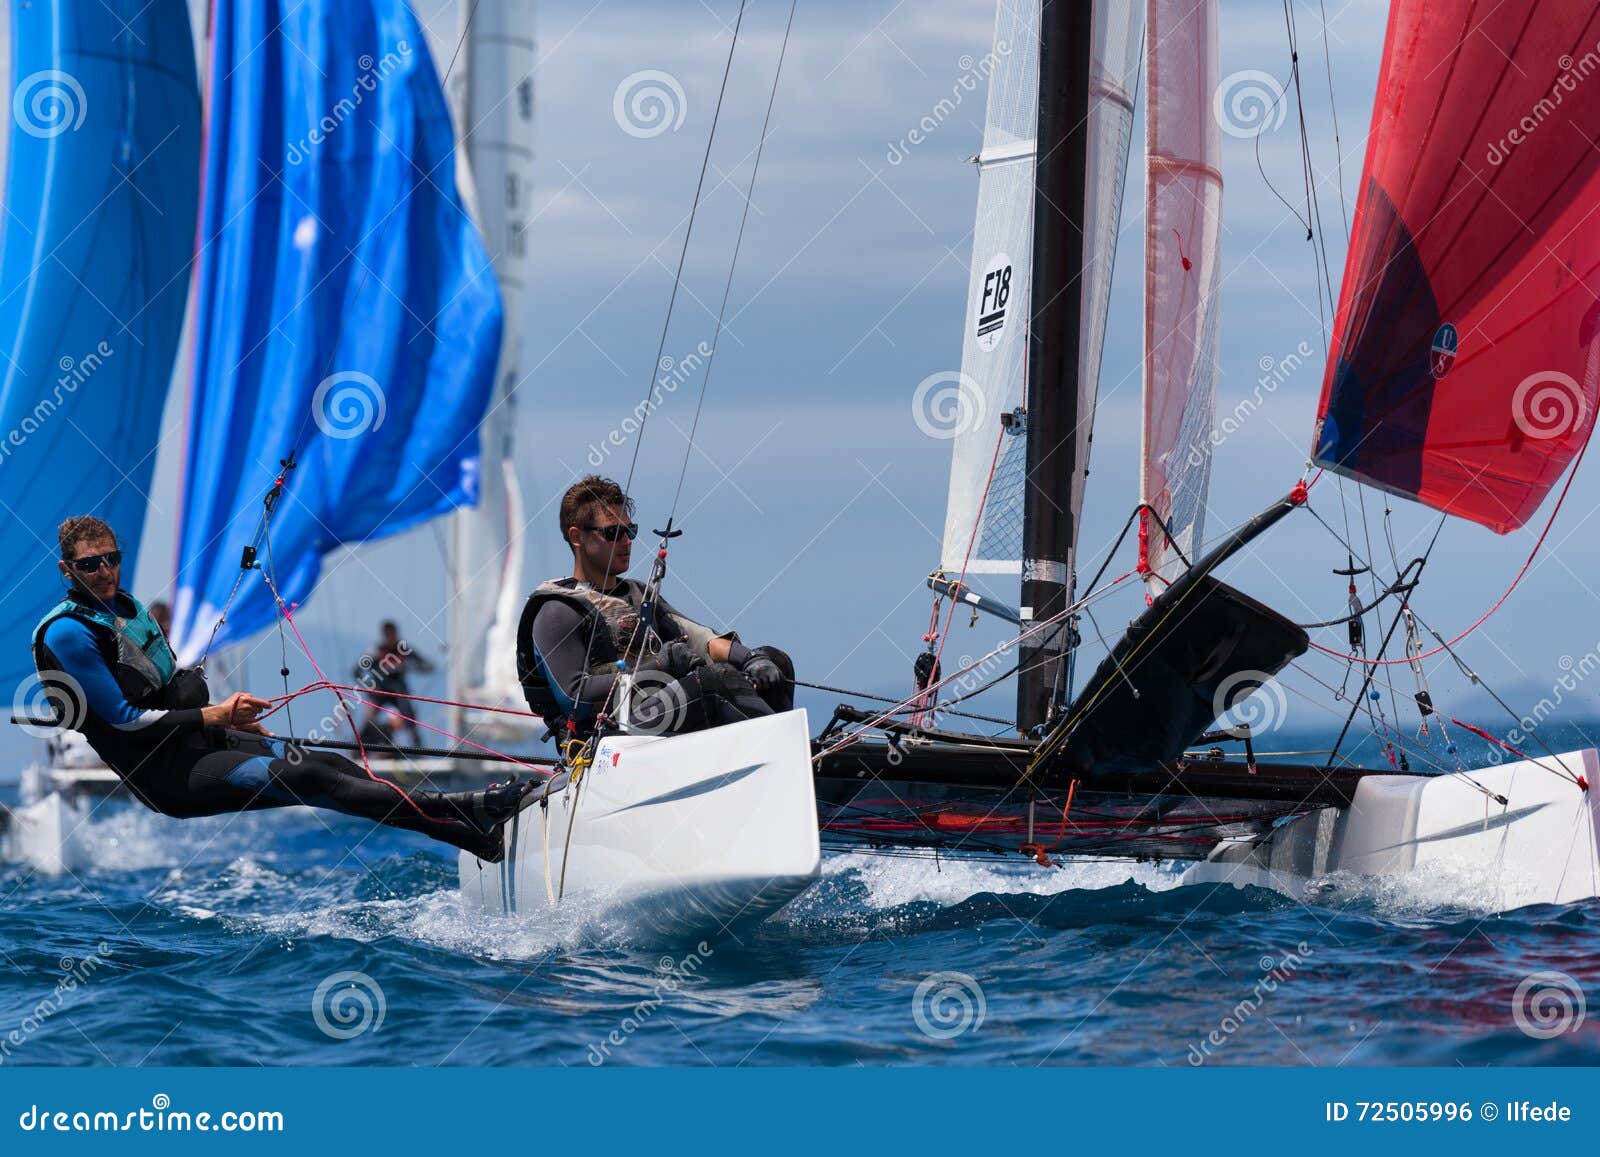 catamaran racing team